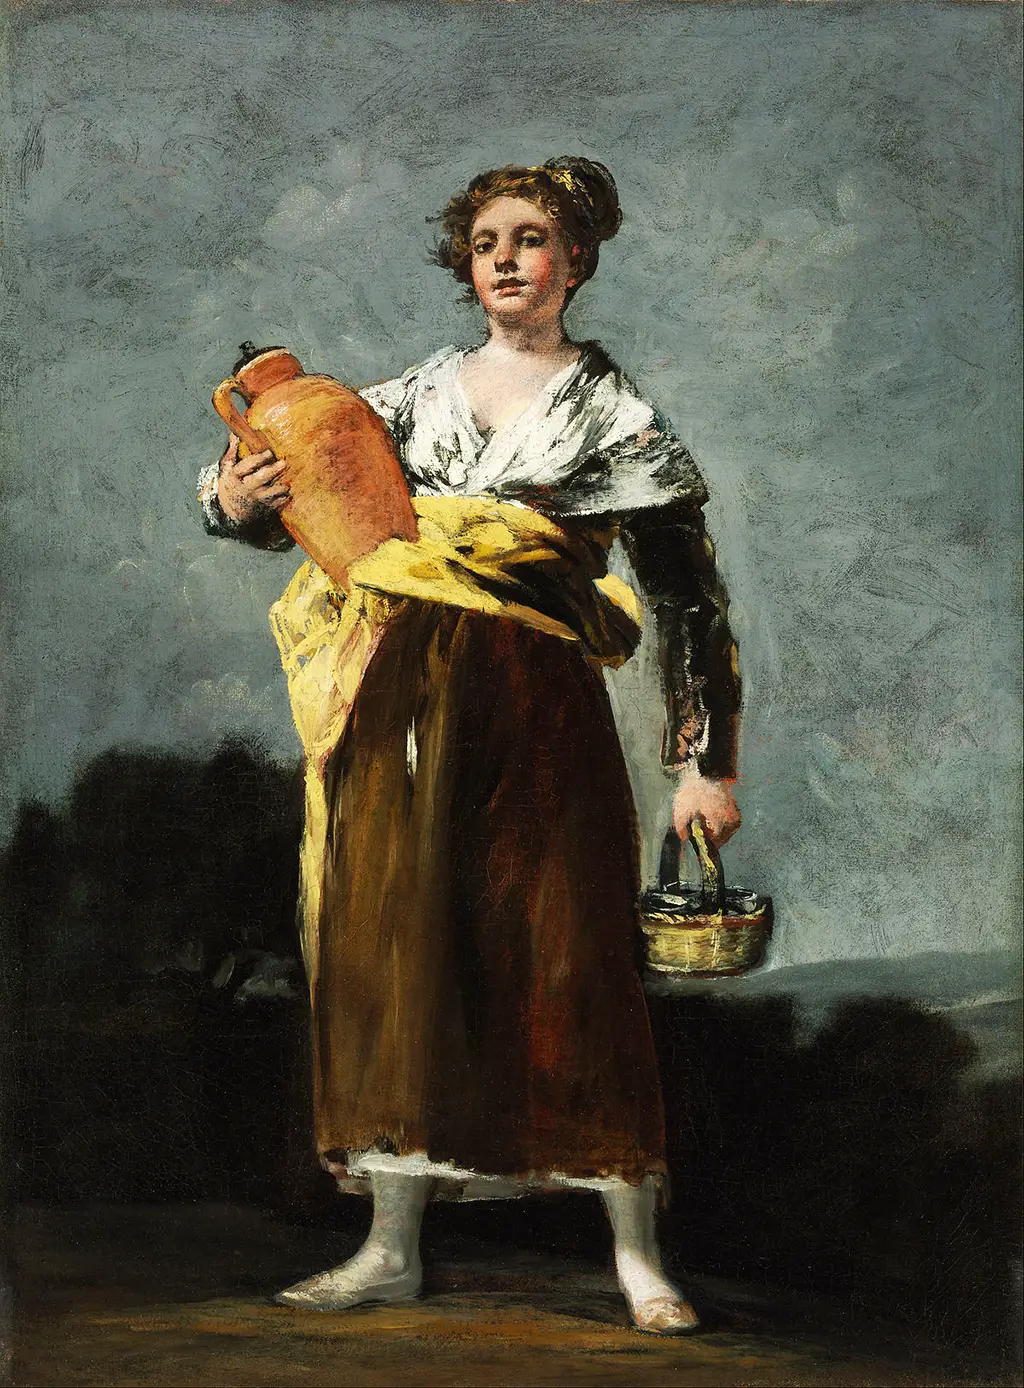 The Water Bearer (Water Carrier) in Detail Francisco de Goya